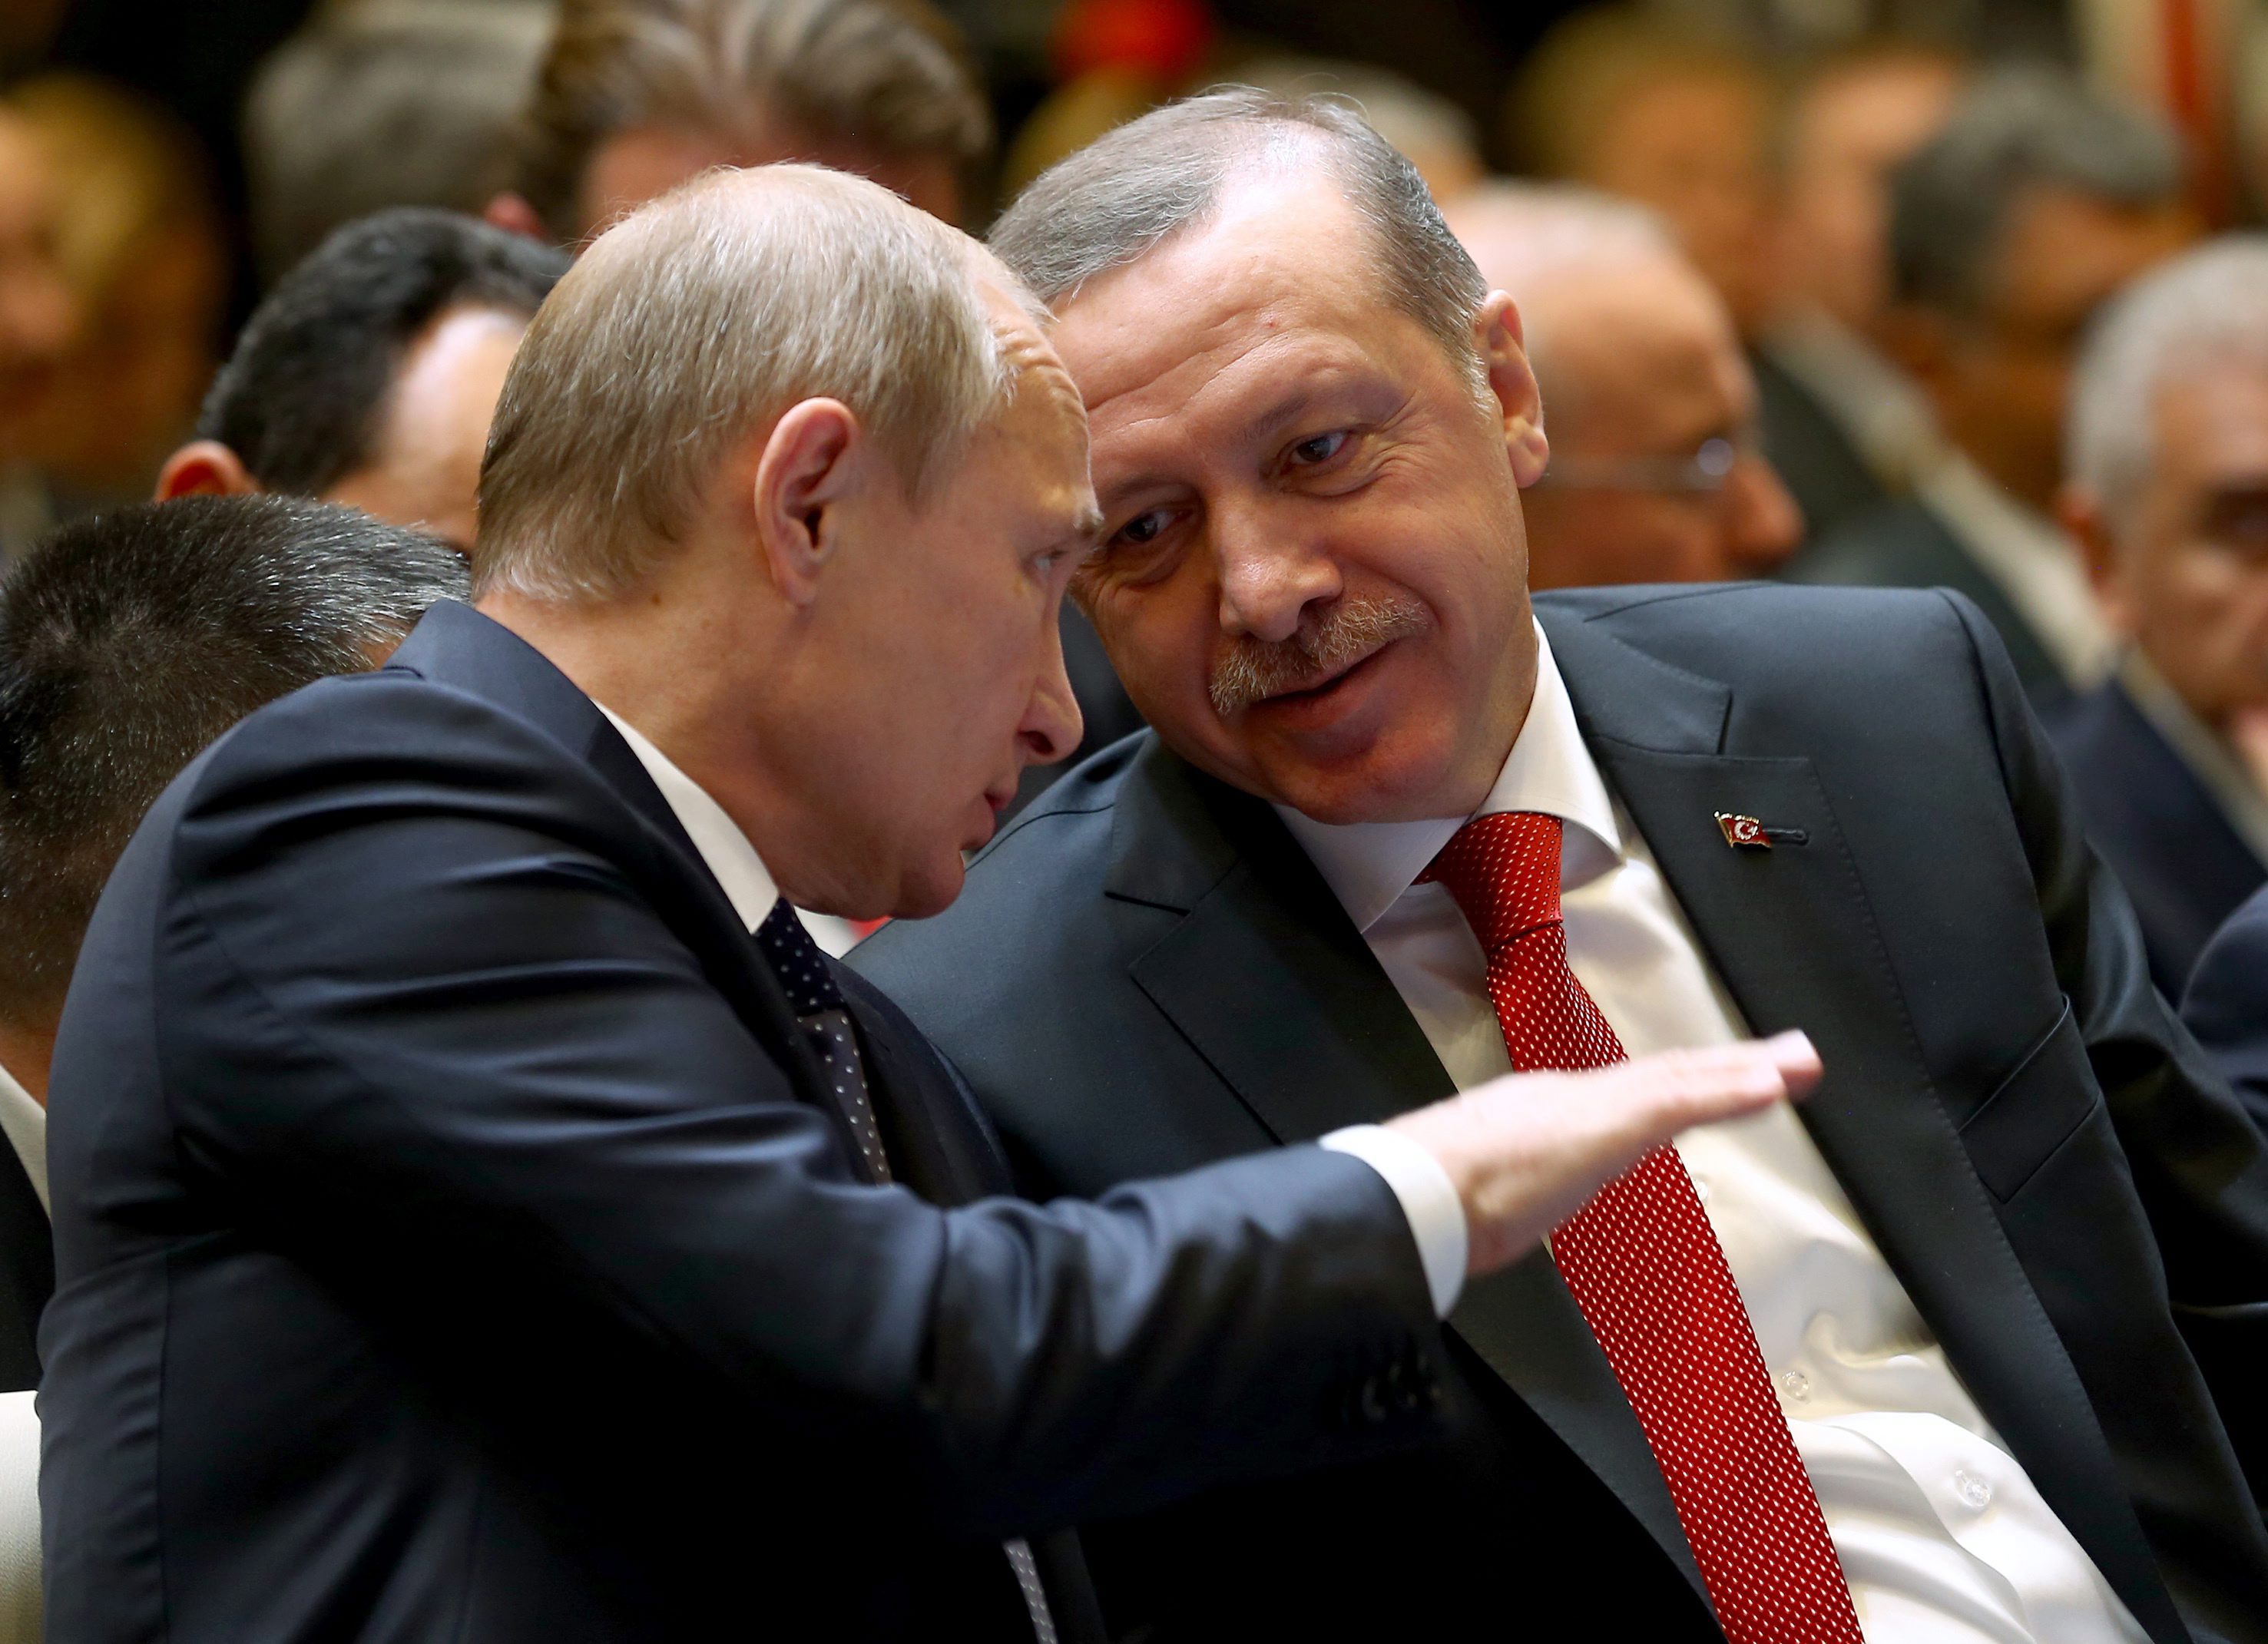 Νέο μαξιλαράκι Πούτιν στον Ερντογάν: Οικονομικές διευκολύνσεις στις αγορές αερίου, ενόψει εκλογών